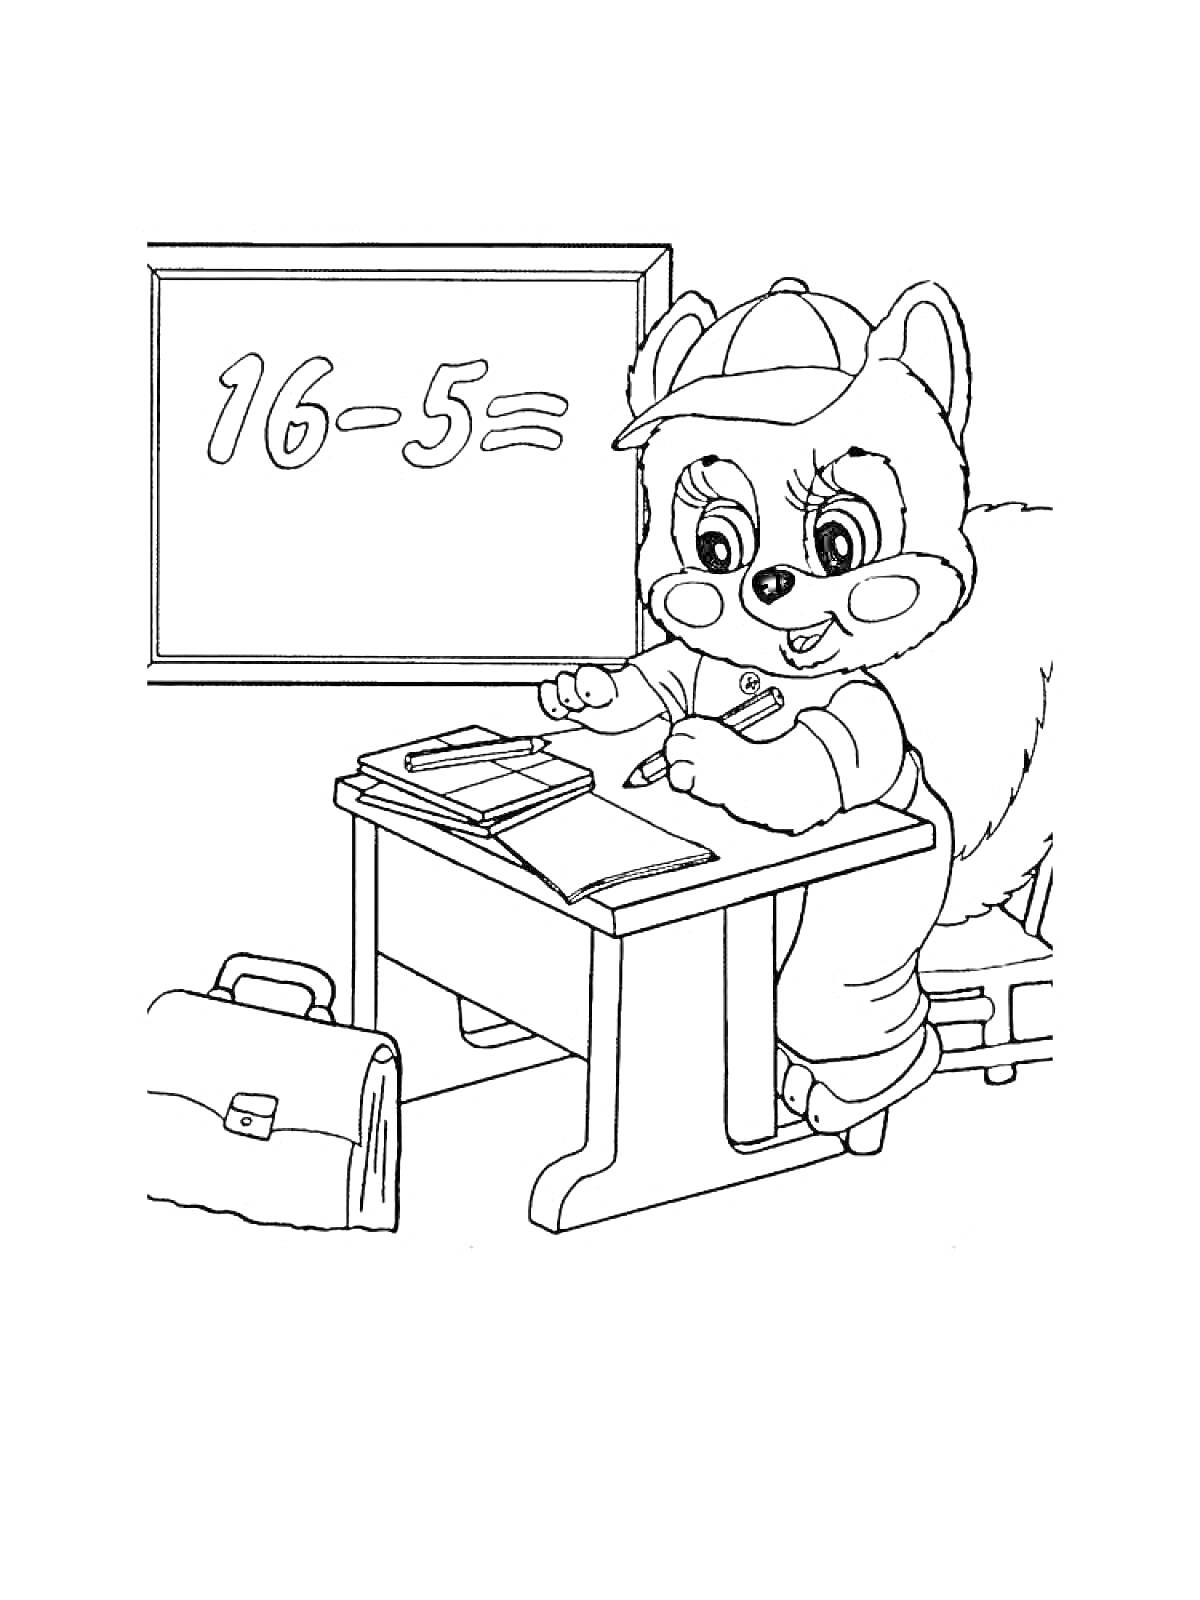 Раскраска Ученик-зверек с ручкой за школьной партой делает уроки, рядом рюкзак и доска с примером 16-5=